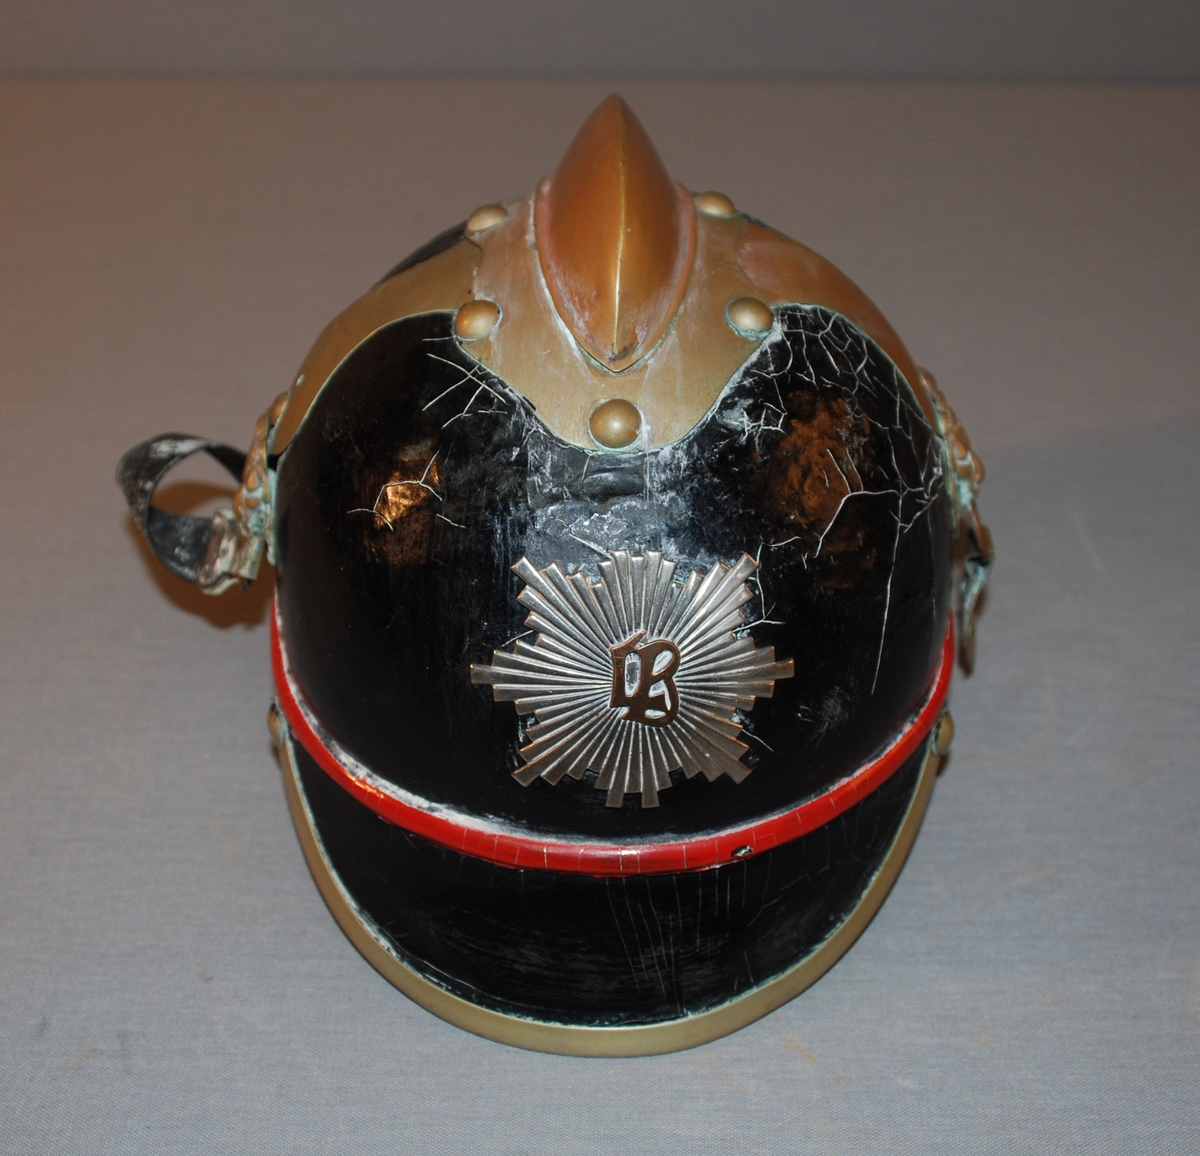 Bergen byvåpen - merke i metall på hjelmens front.